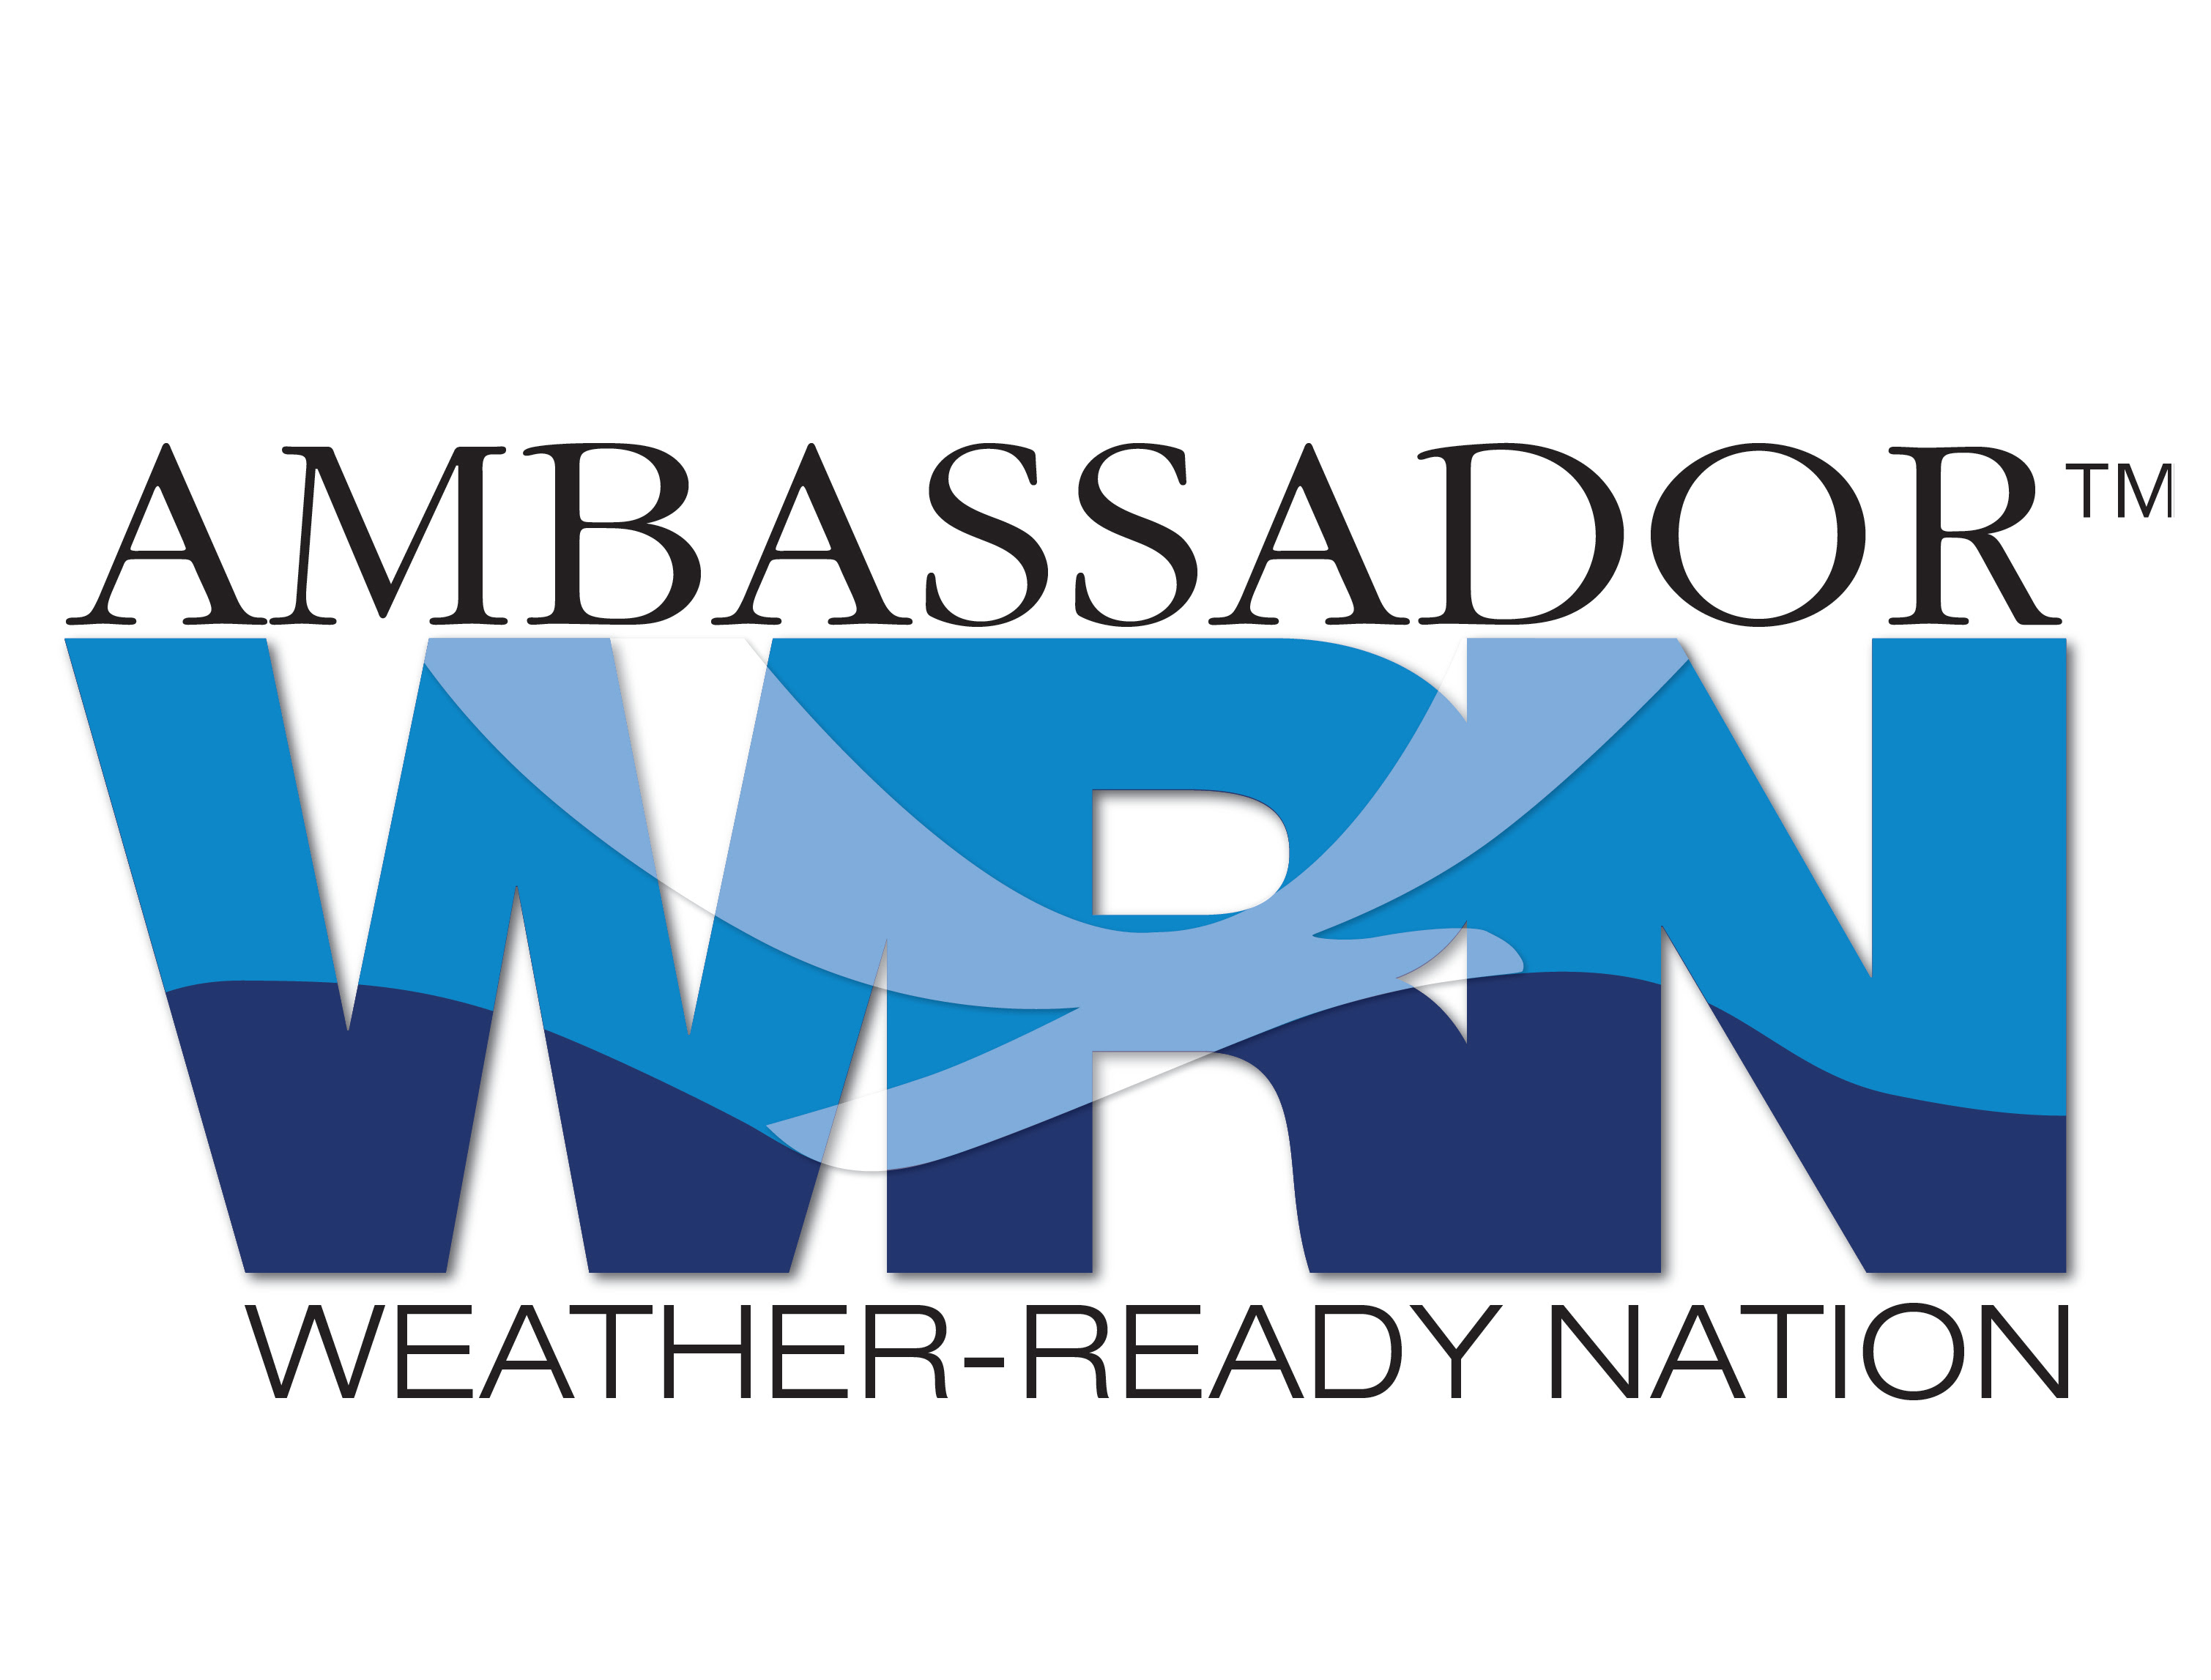 Weerbestendig Nation Ambassador-logo.